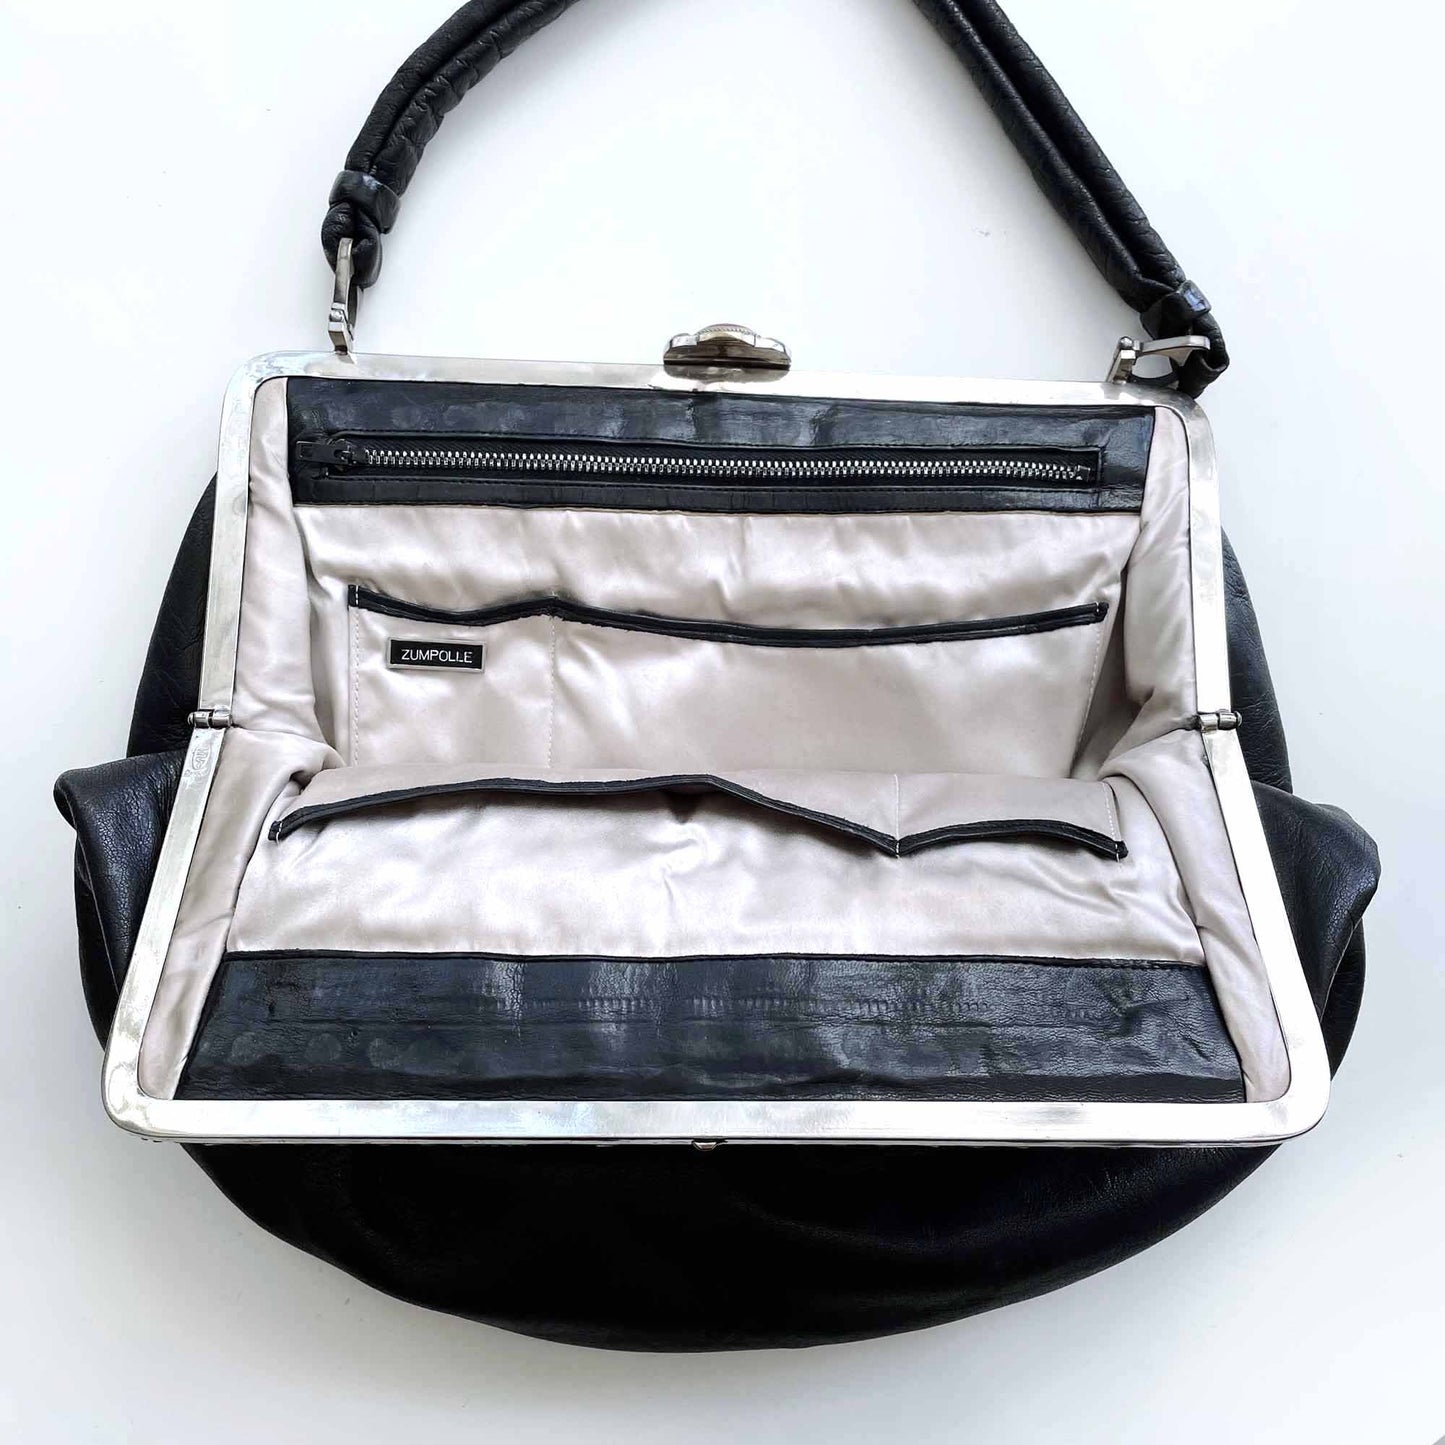 vintage 50's zumpolle embellished leather evening handbag